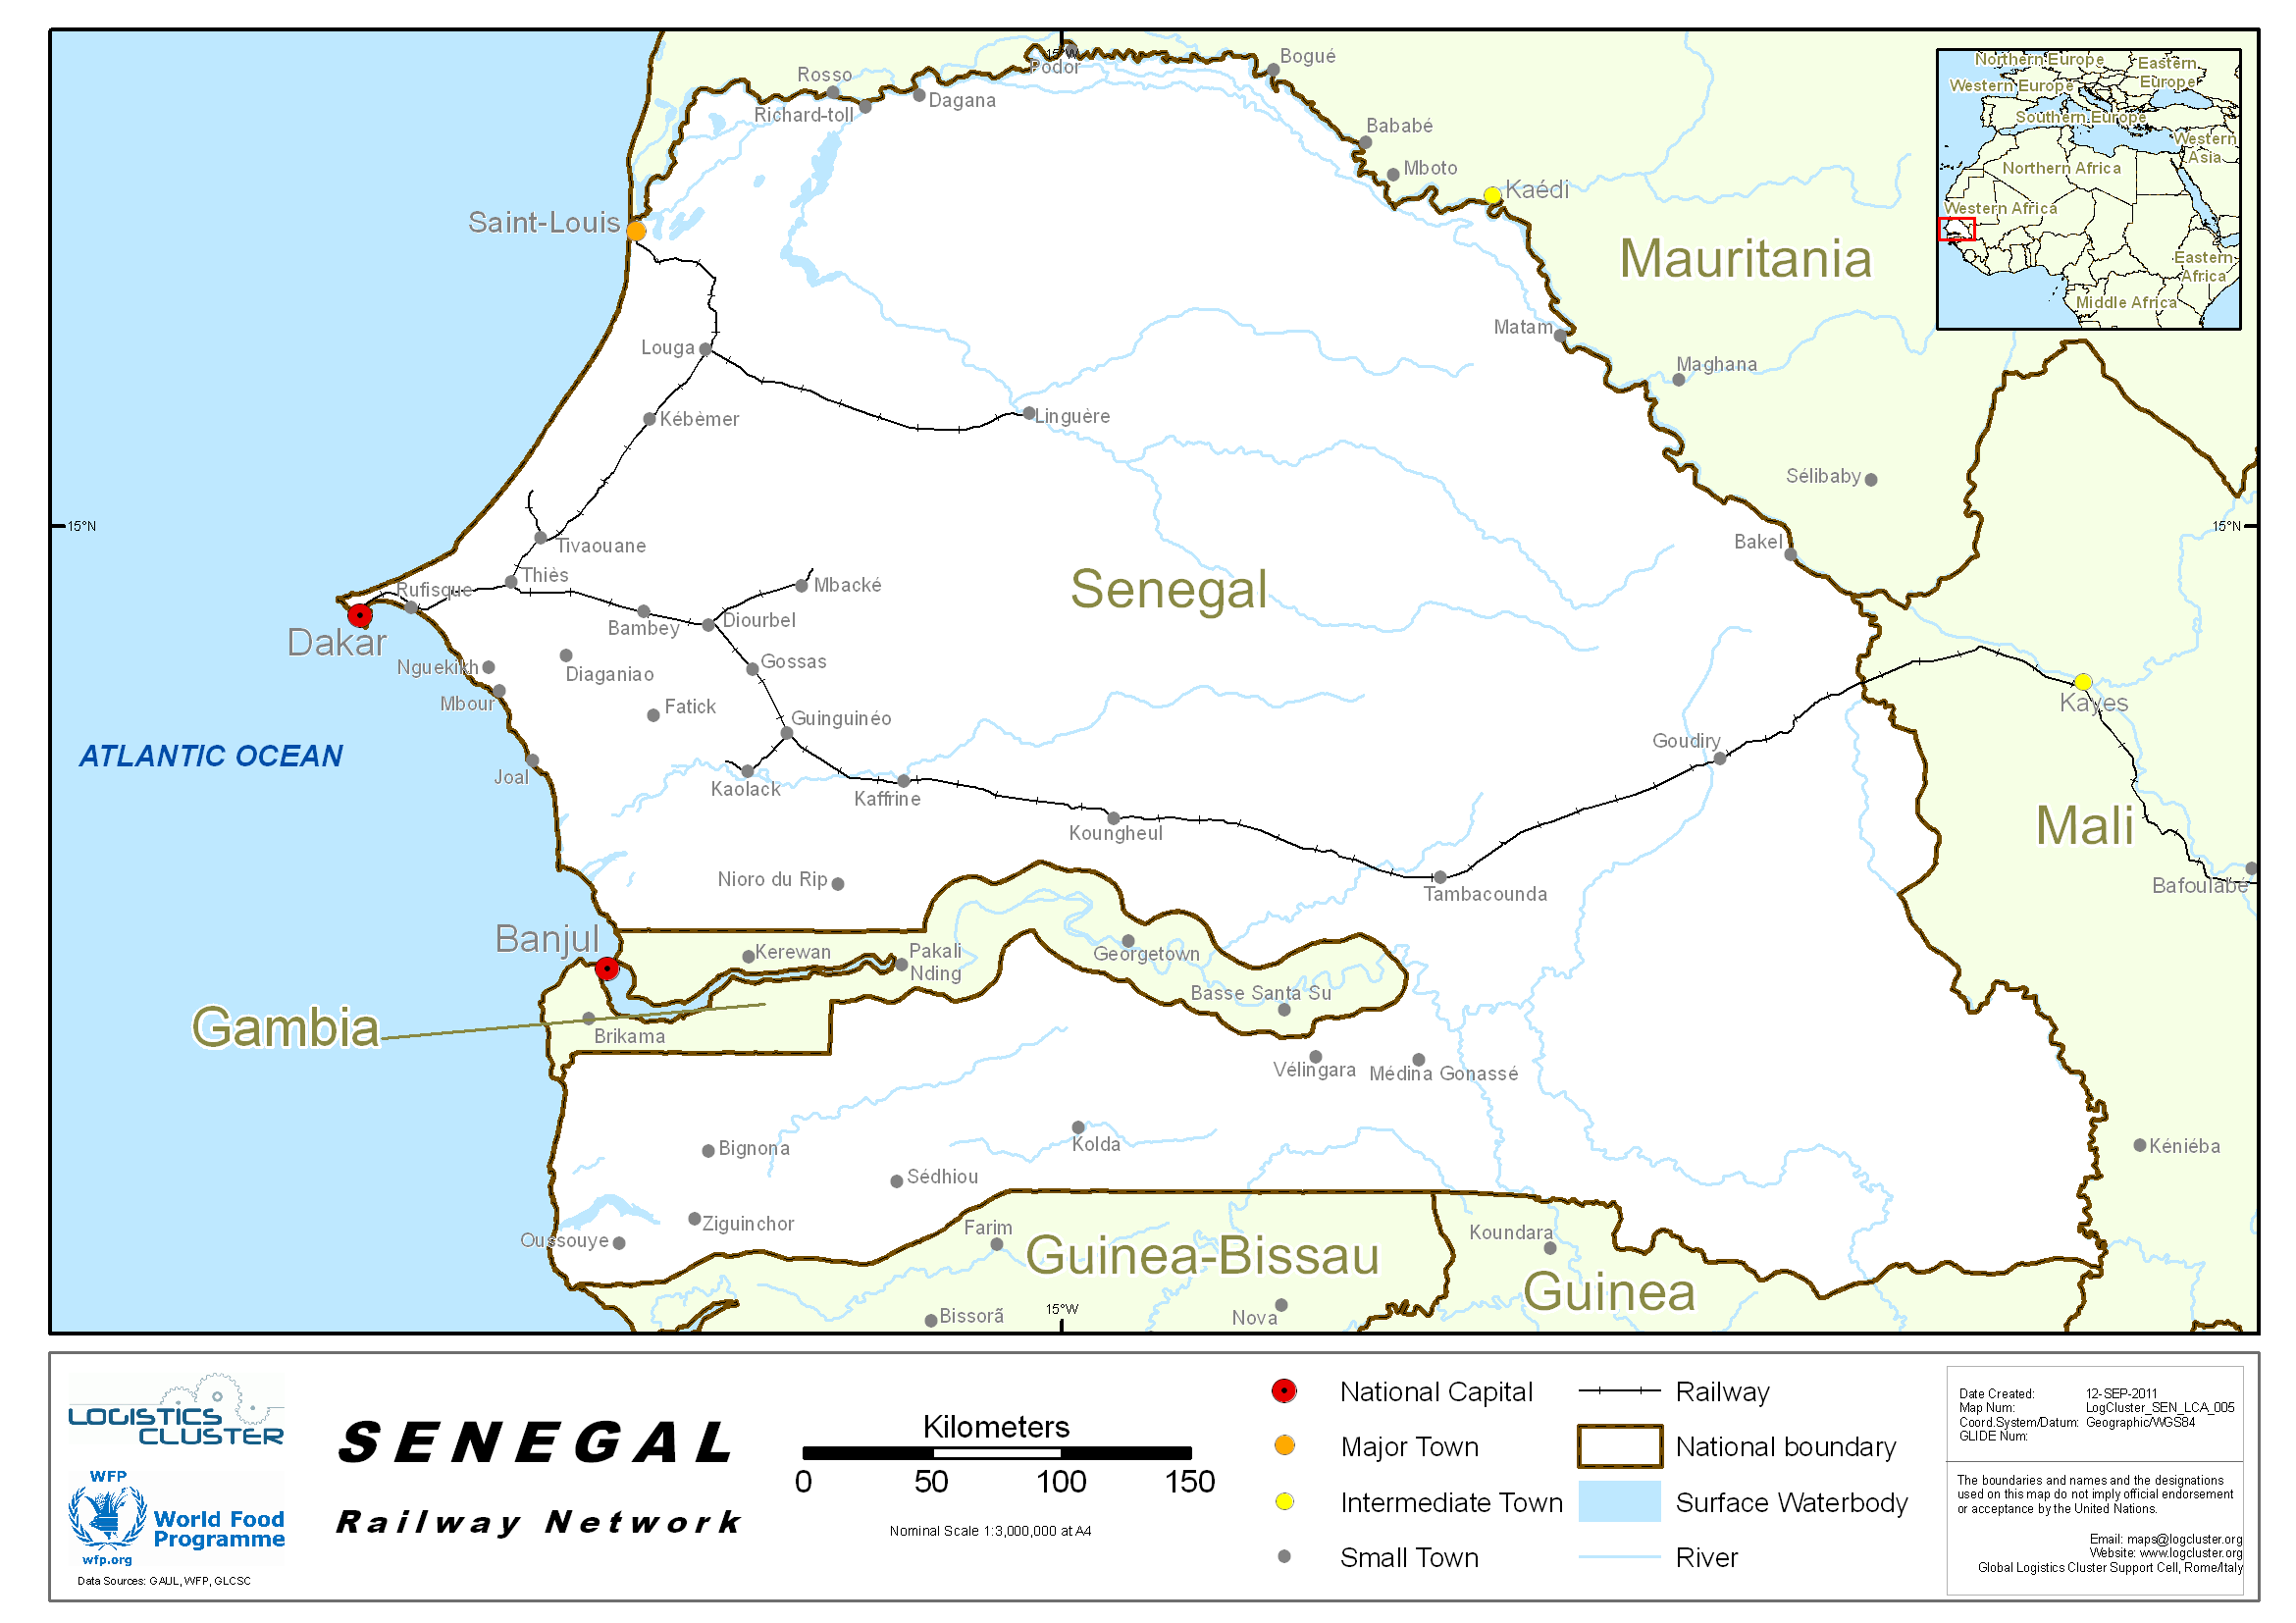 Senegal Railways